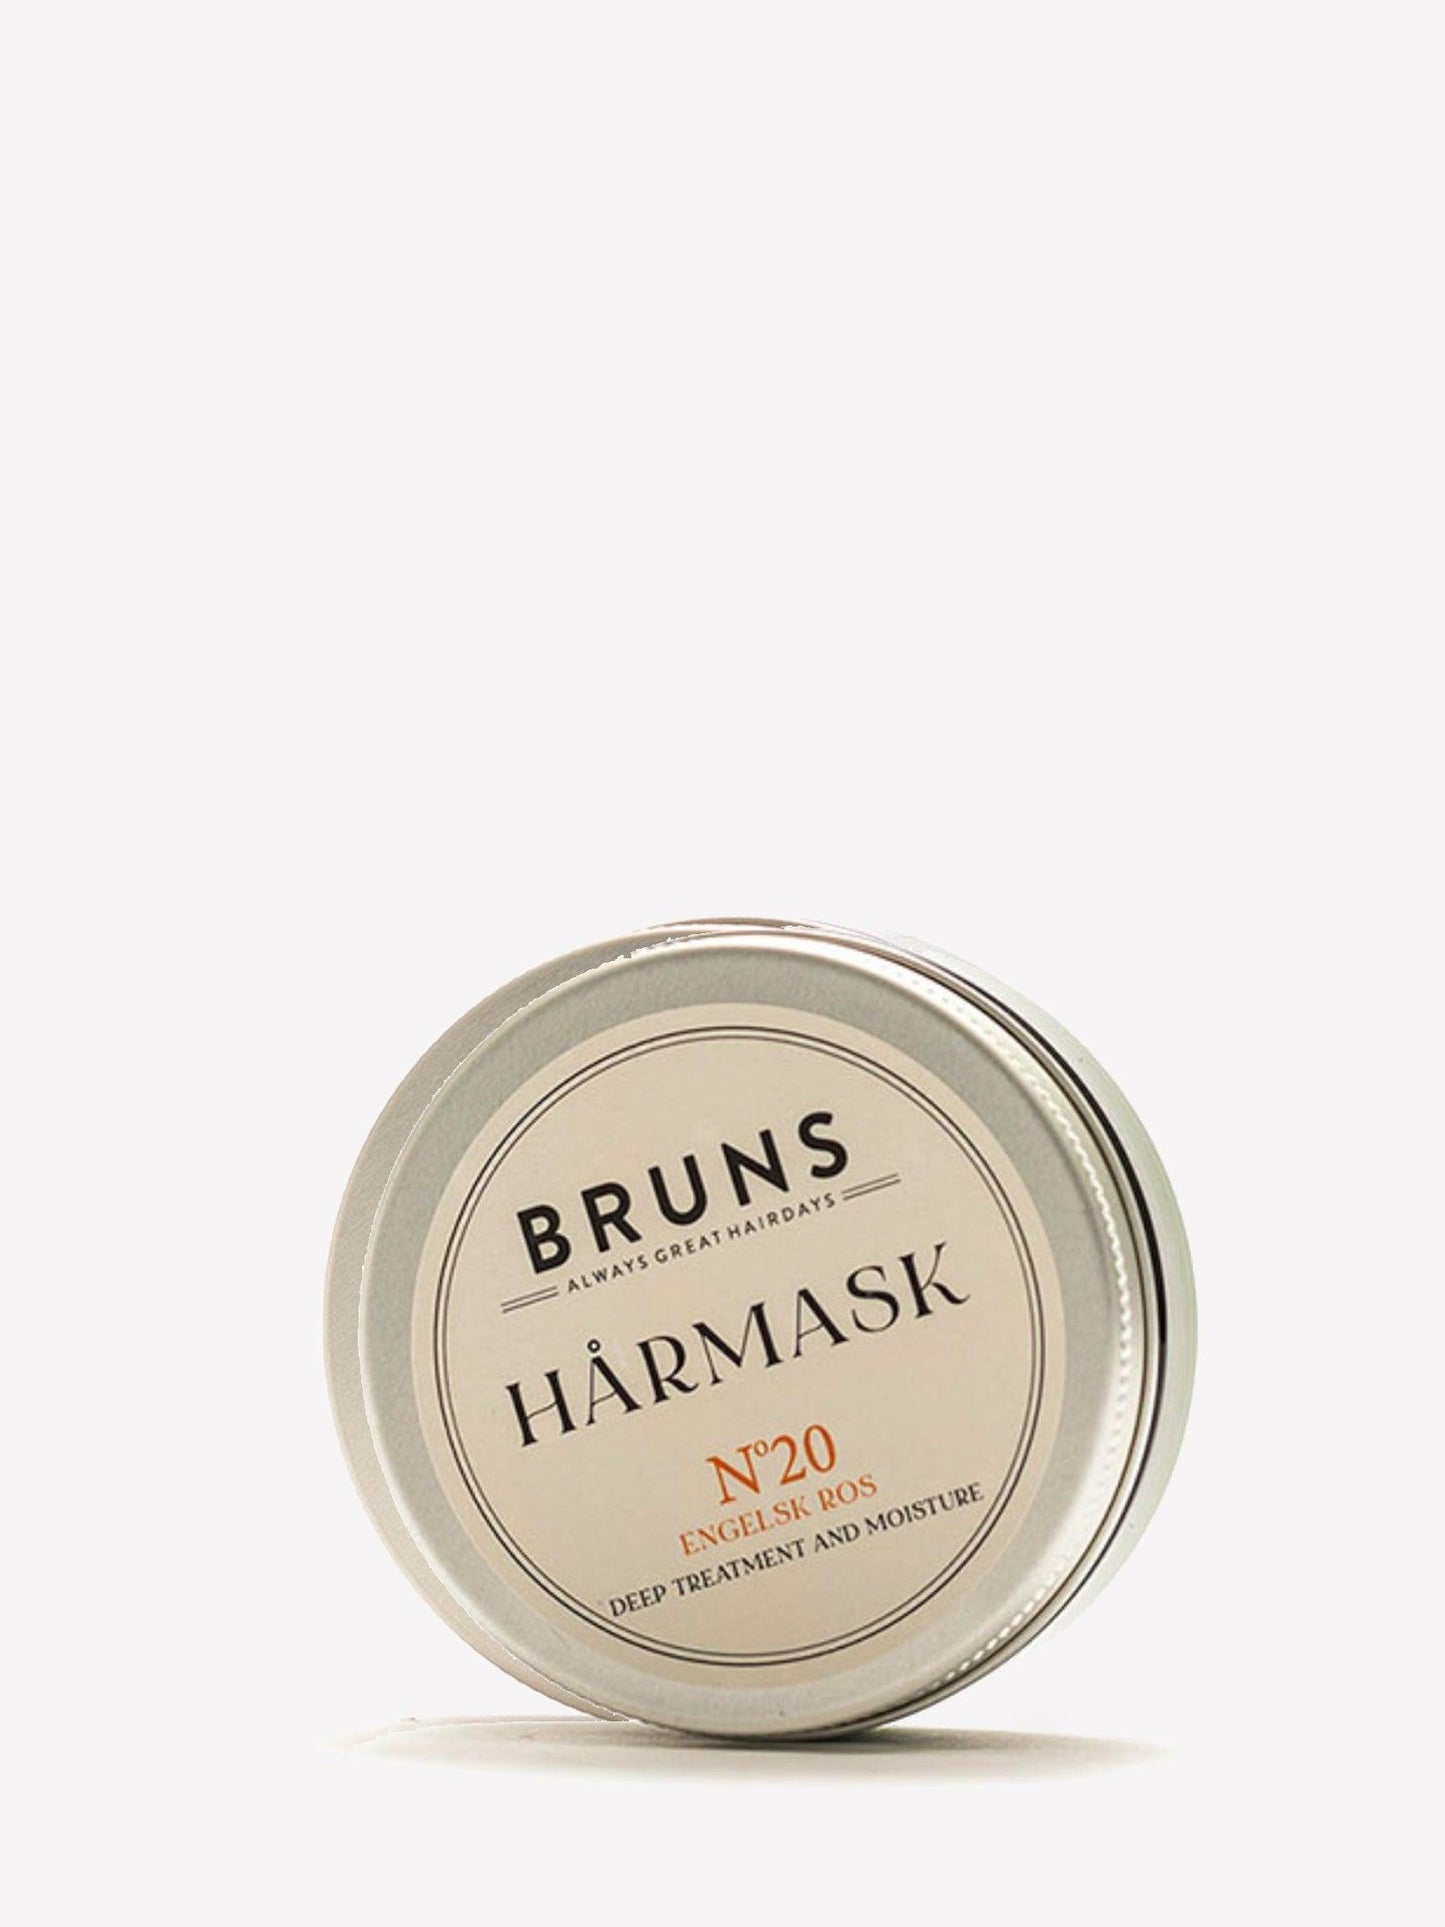 Bruns - Hårmask Nº20 - Engelsk Ros